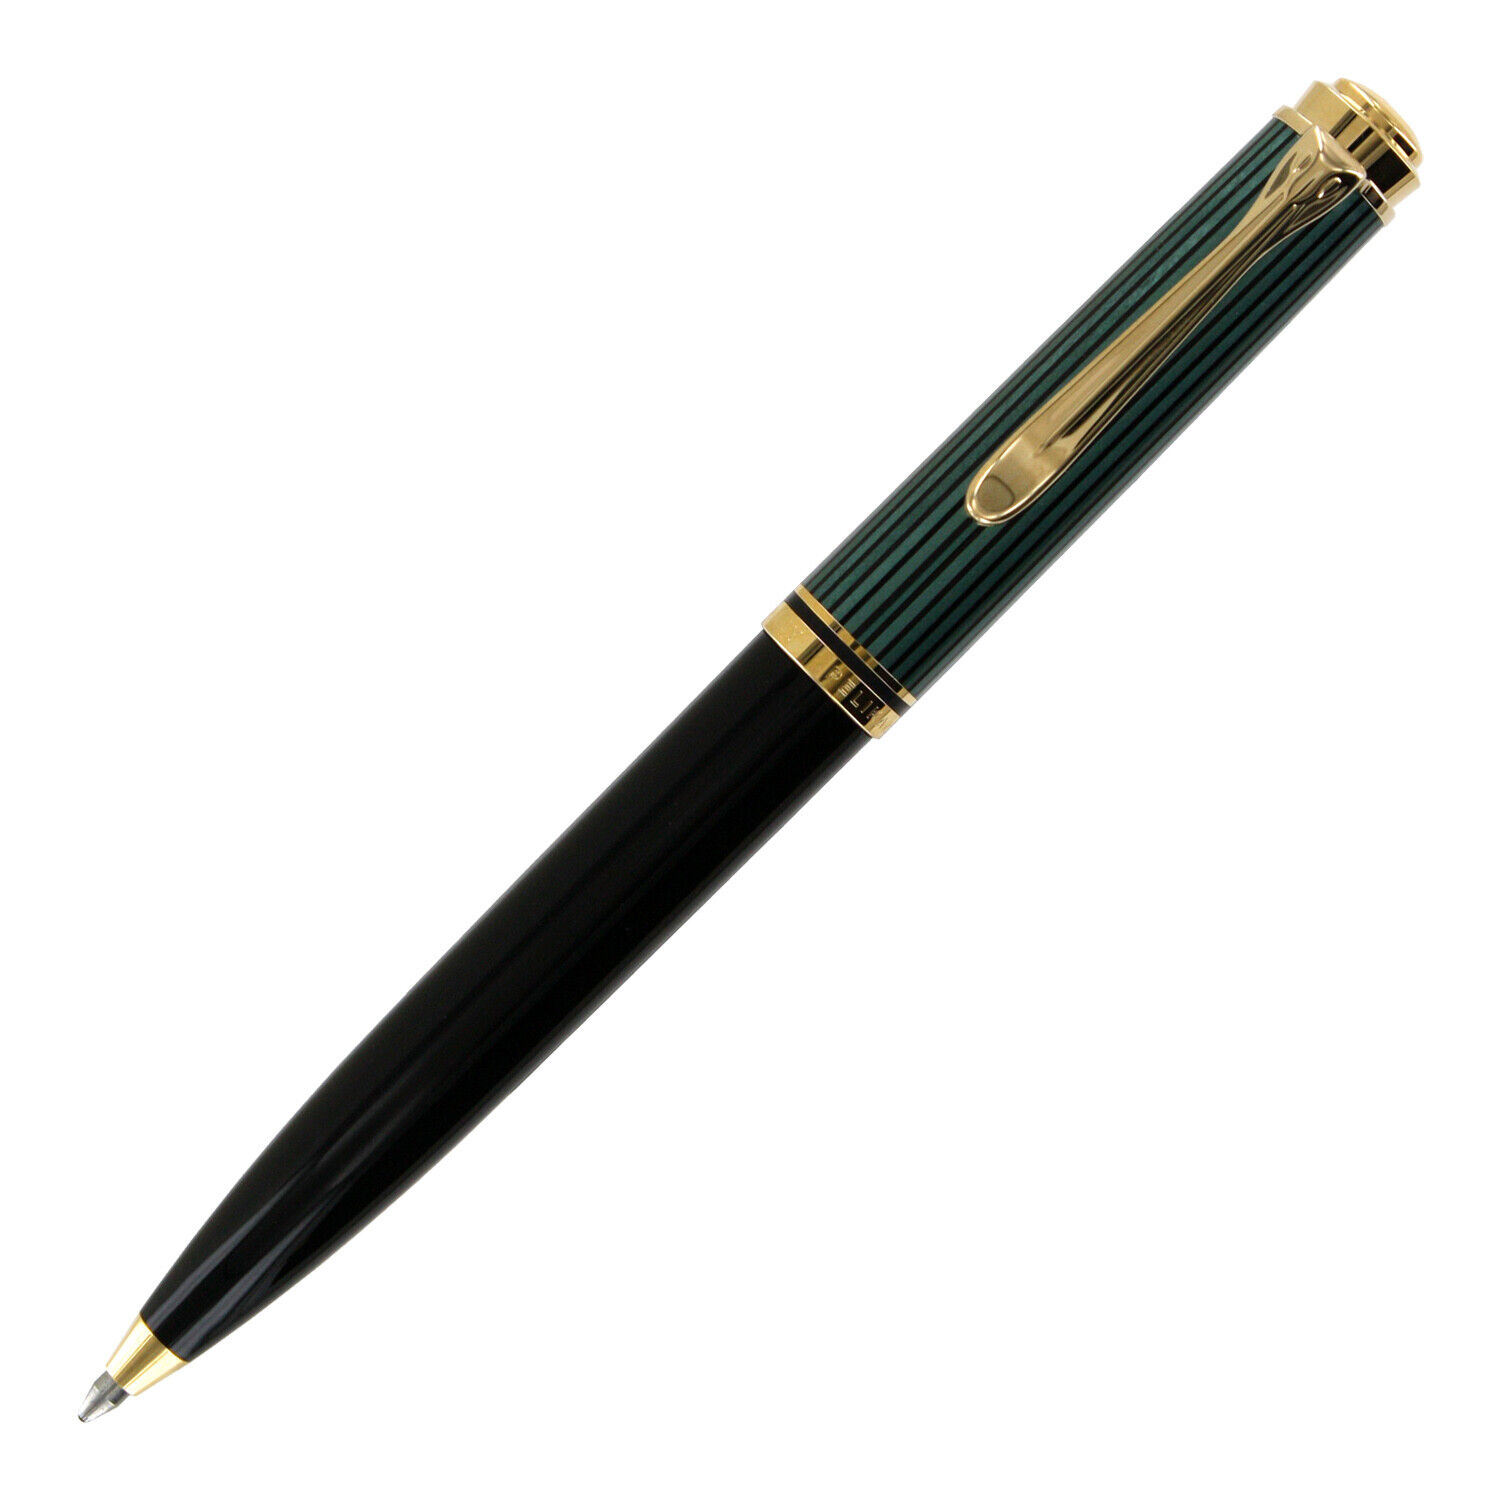 Pelikan Souveran 600 Black/Green Gold Trim Ballpoint Pen - 980086